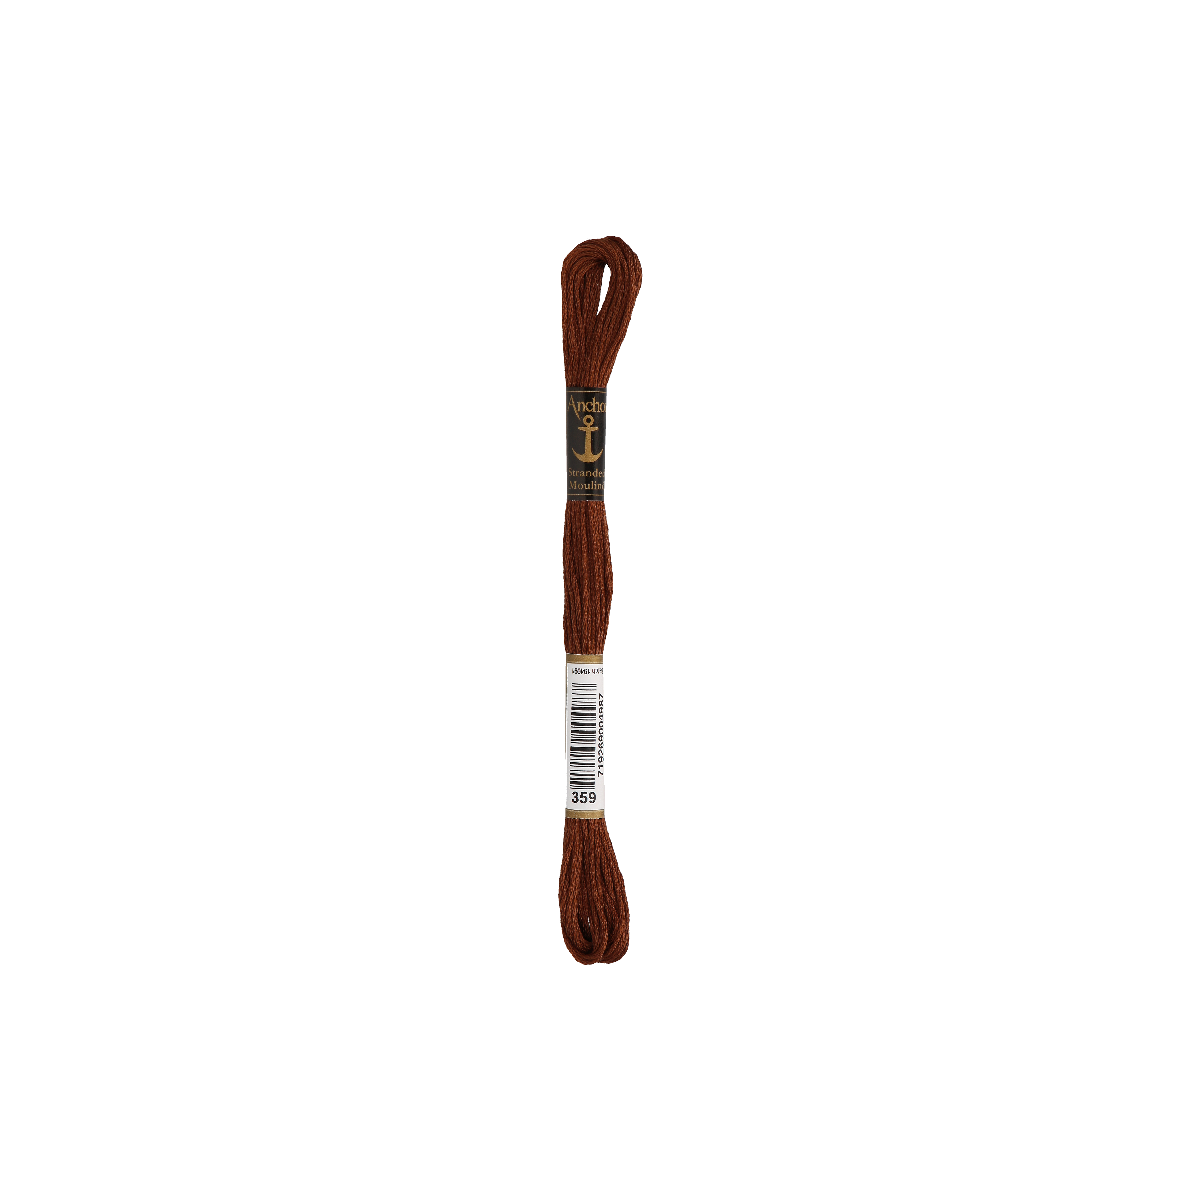 Anchor Sticktwist 8m, bruin, katoen, kleur 359, 6-draads